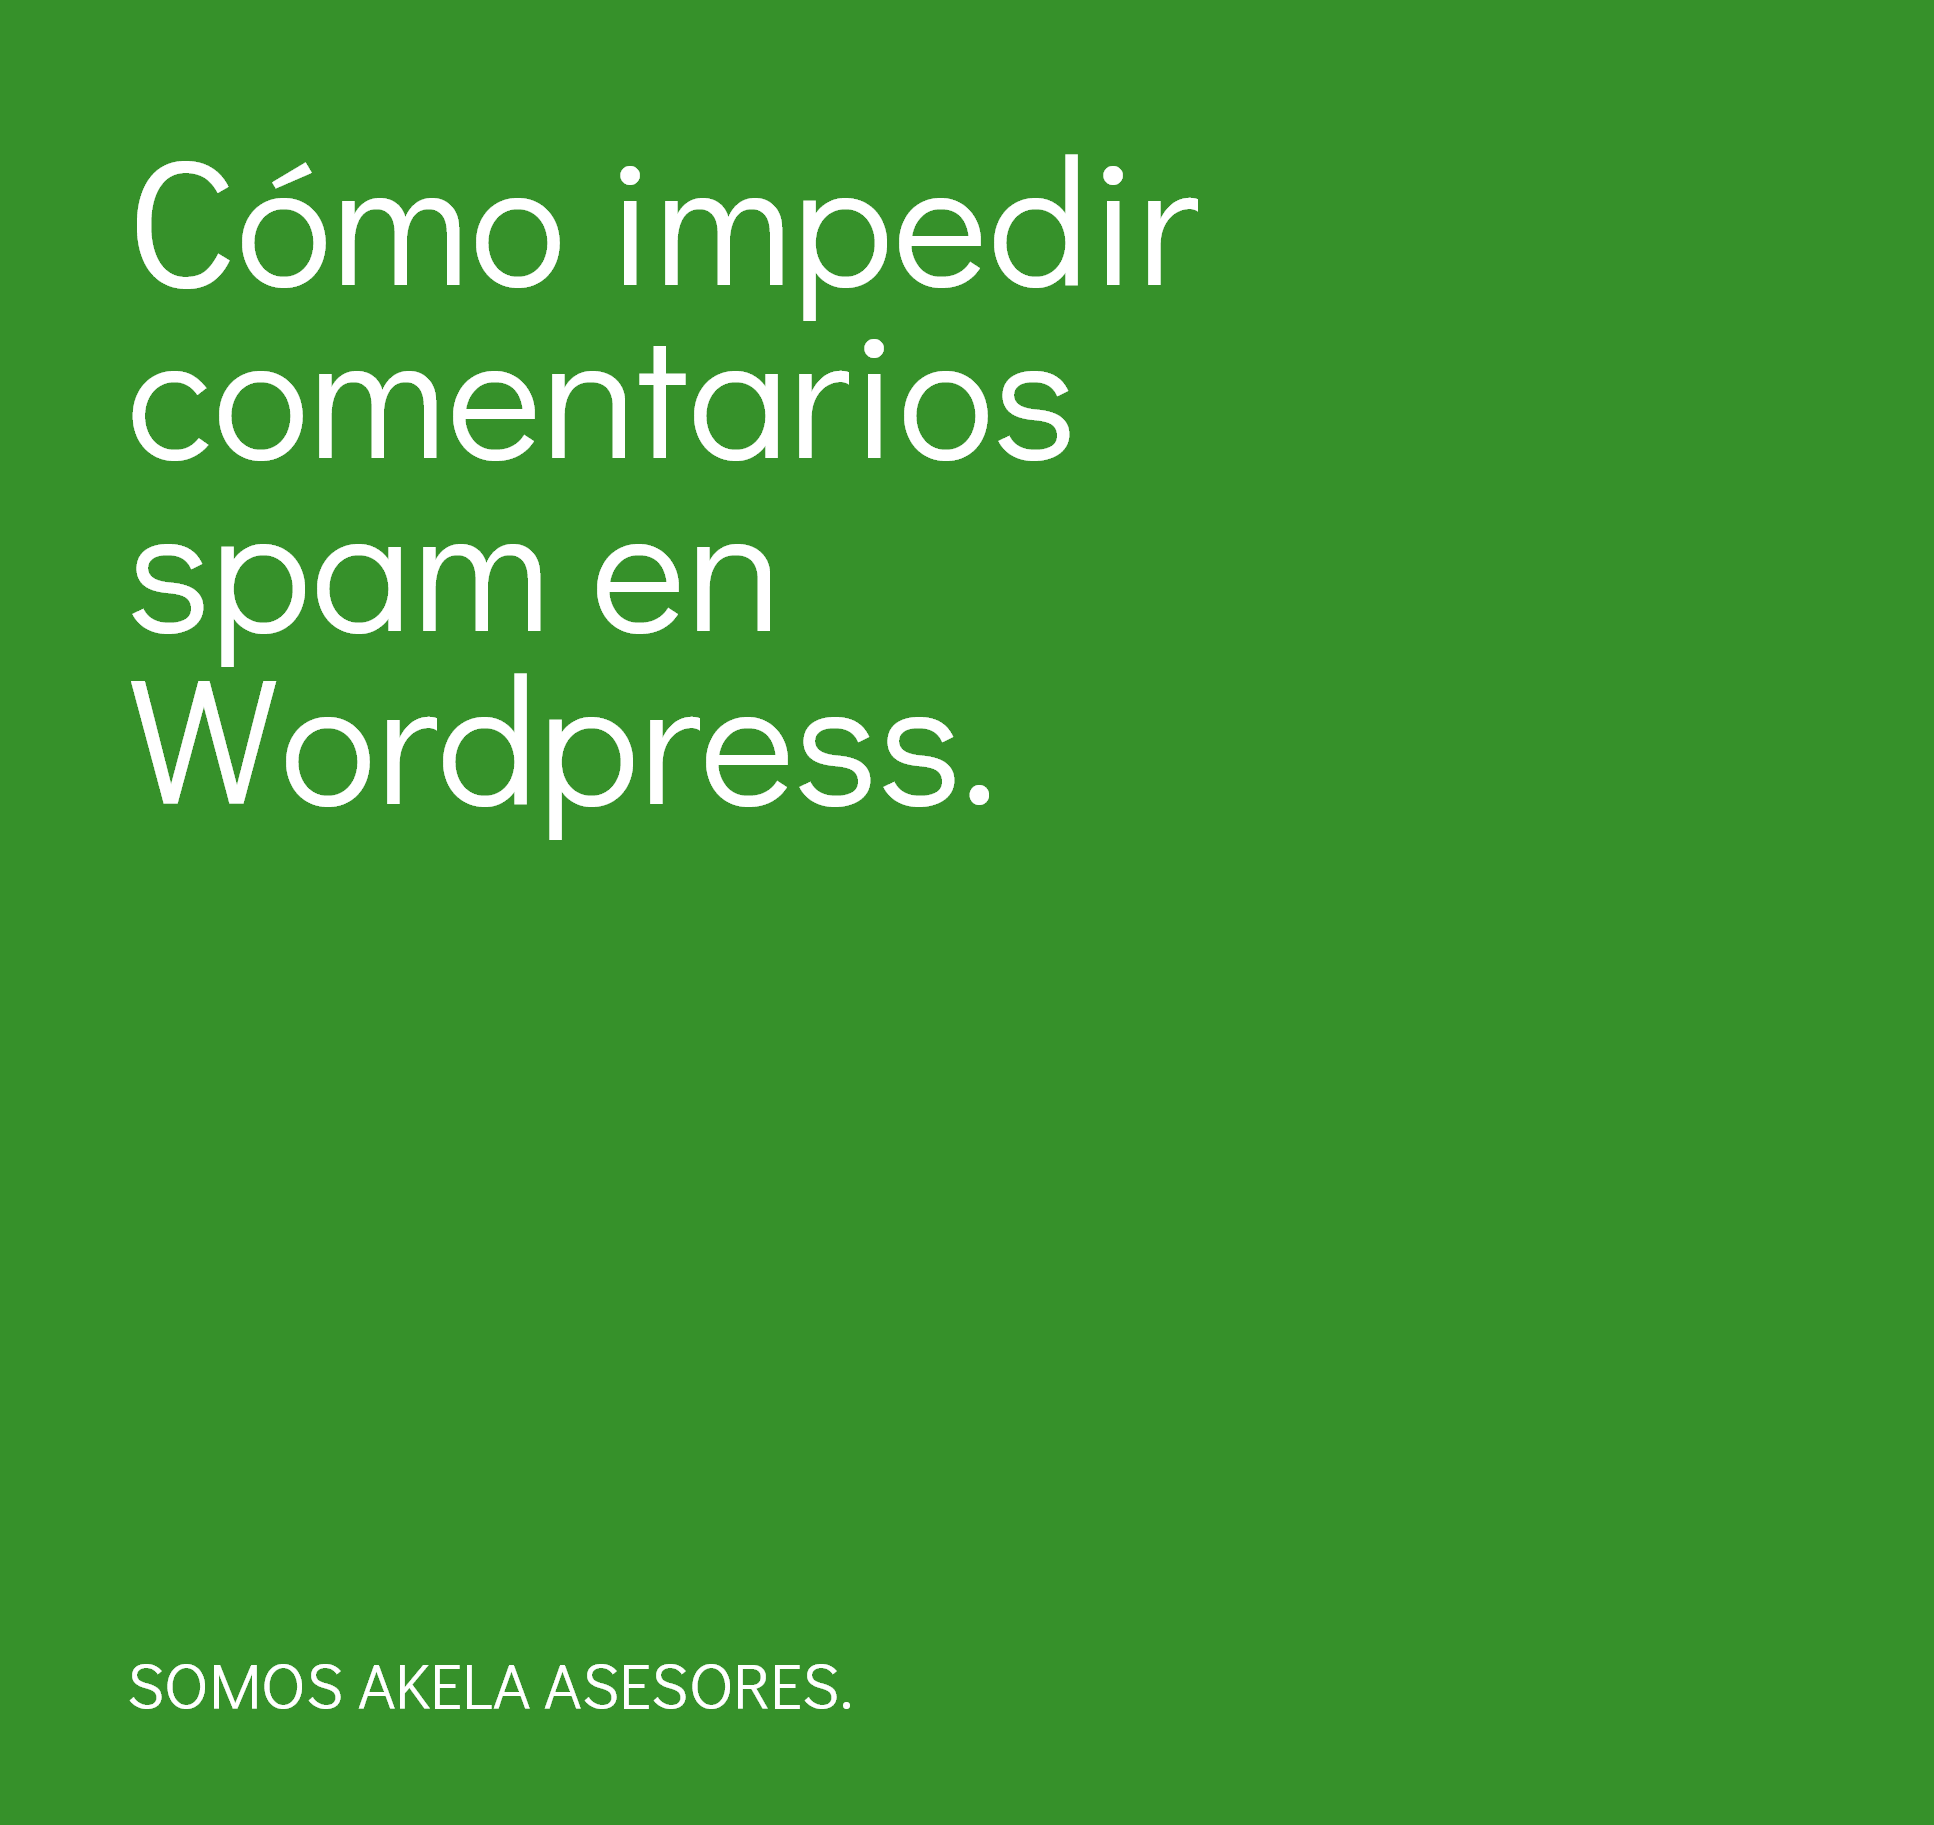 En este momento estás viendo Cómo impedir comentarios spam en WordPress